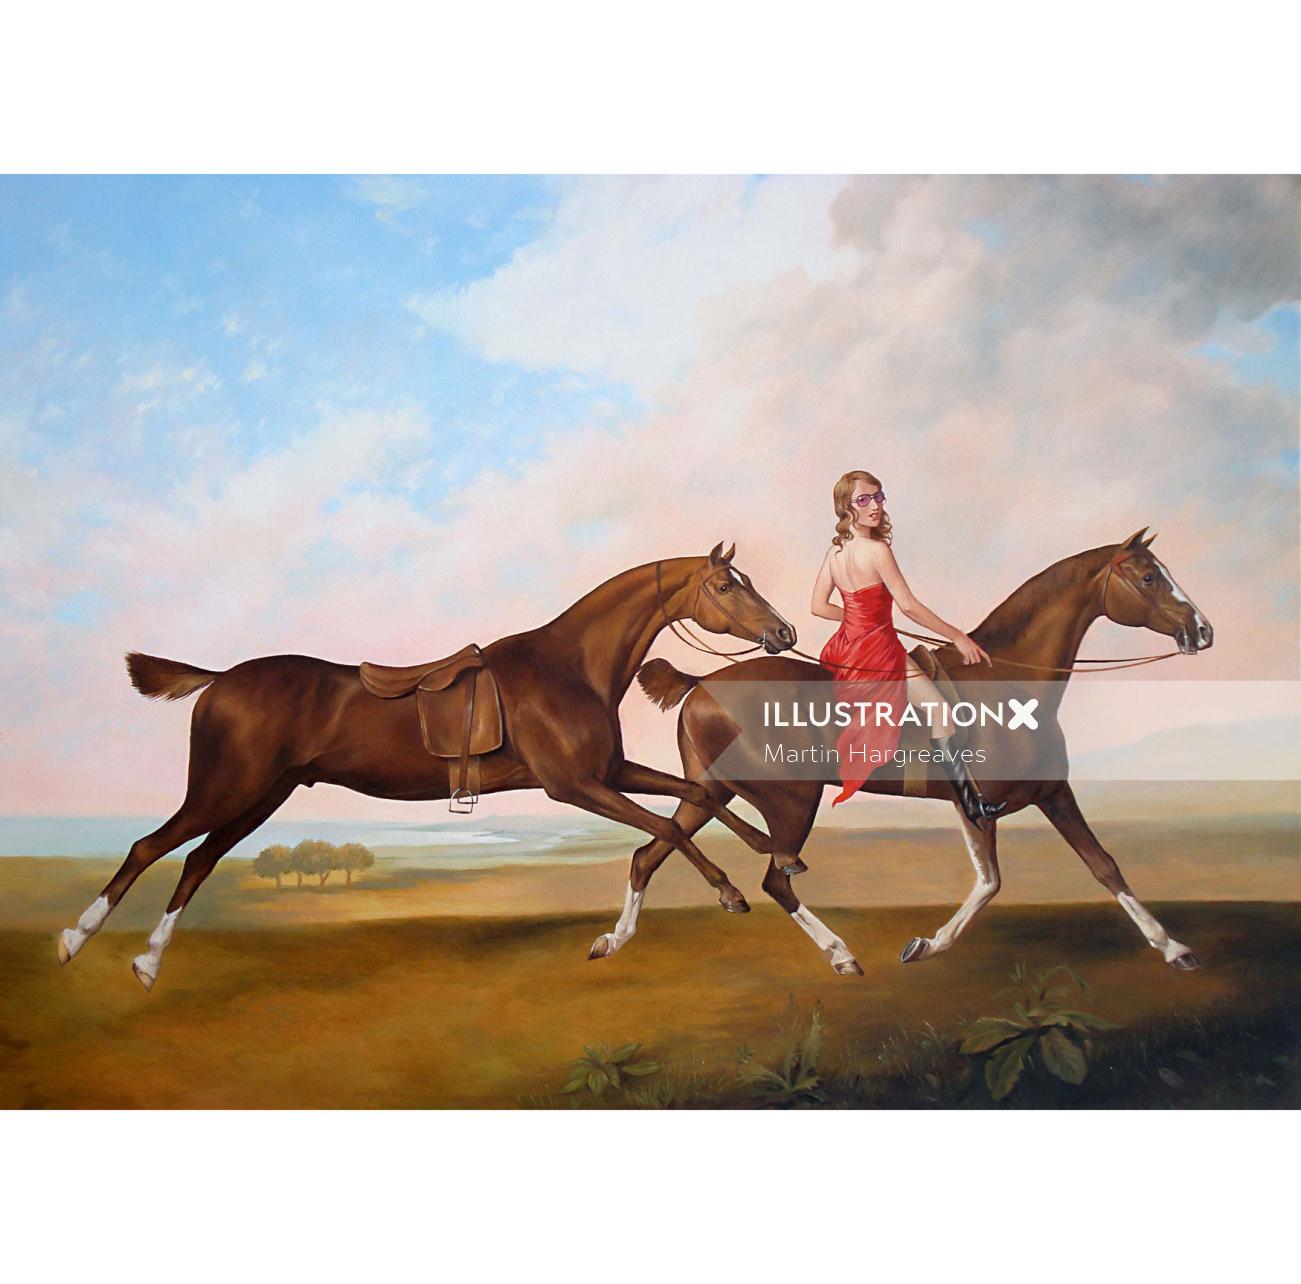 Animales, niña, equitación, caballo